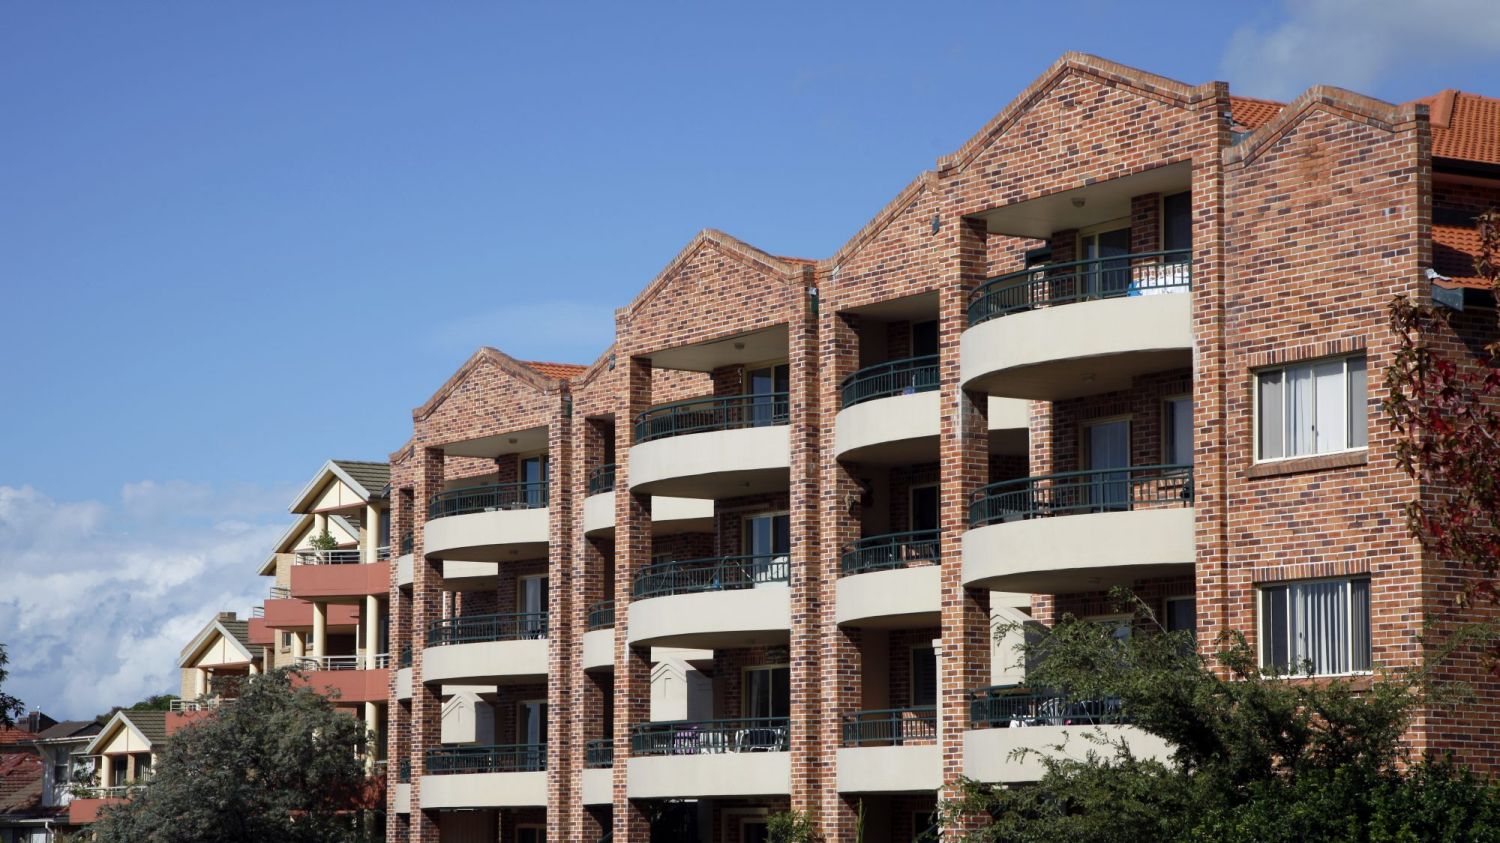 社会影响投资可以解决澳大利亚最脆弱群体的住房短缺问题